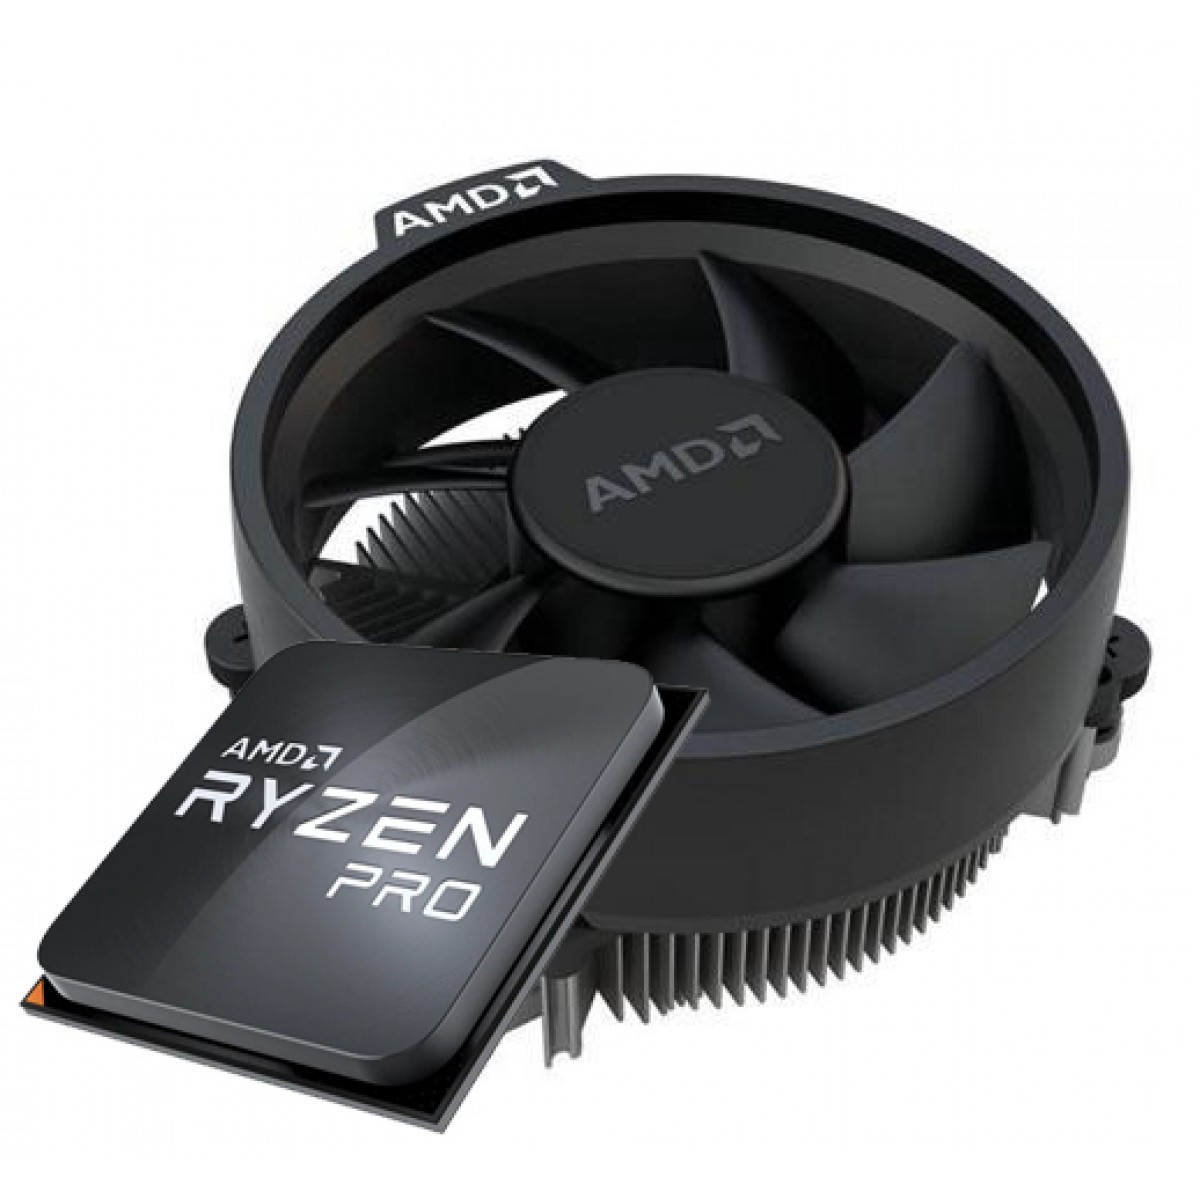 Kit Upgrade, AMD Ryzen 5 PRO 4650GE + Asus Prime A520M-K